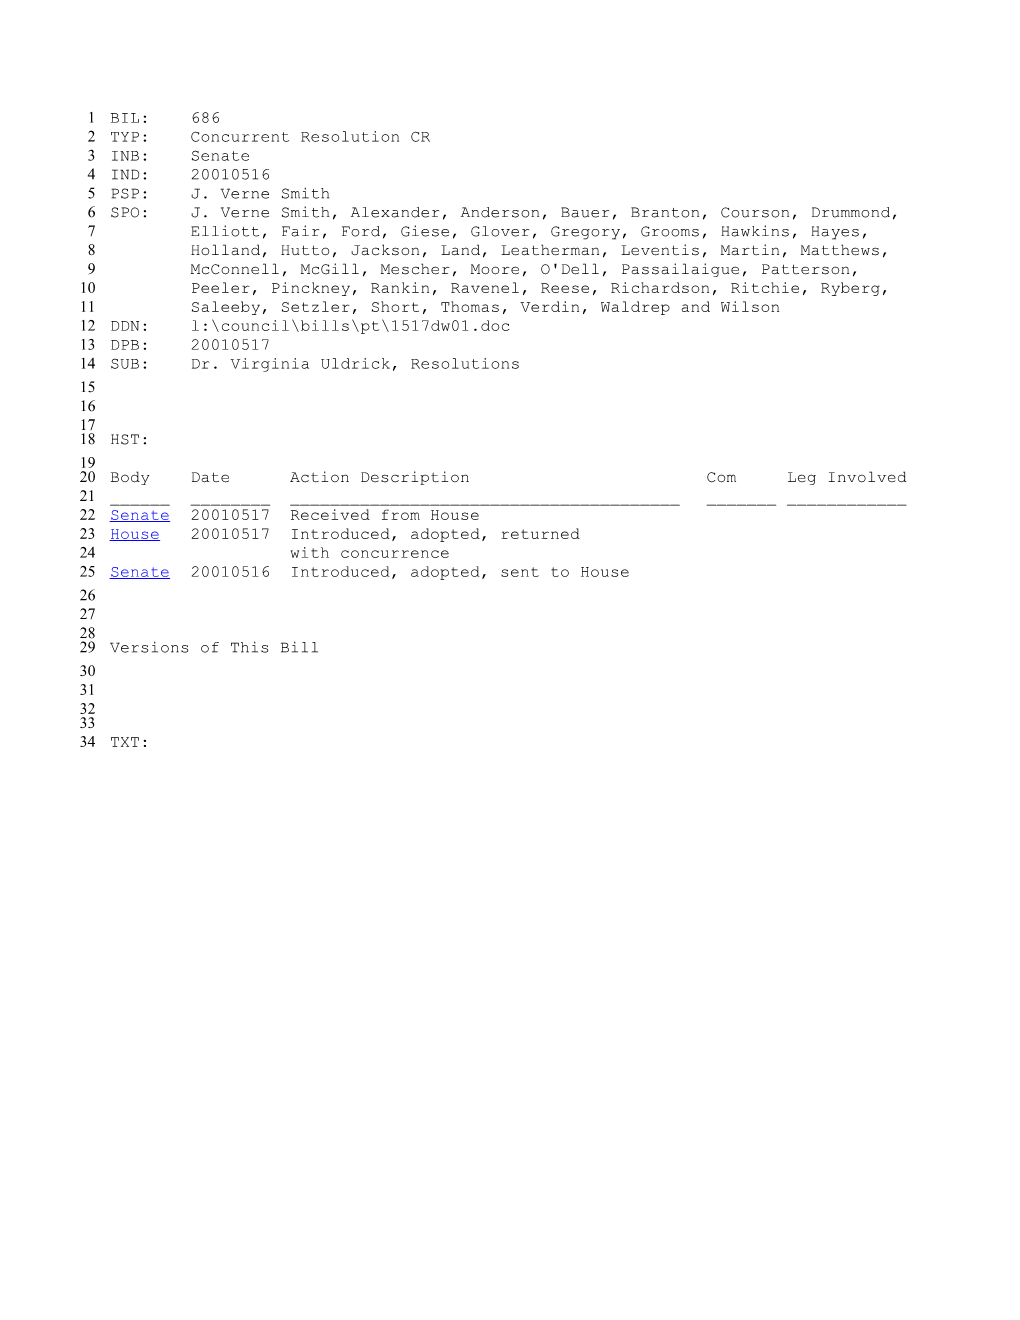 2001-2002 Bill 686: Dr. Virginia Uldrick, Resolutions - South Carolina Legislature Online